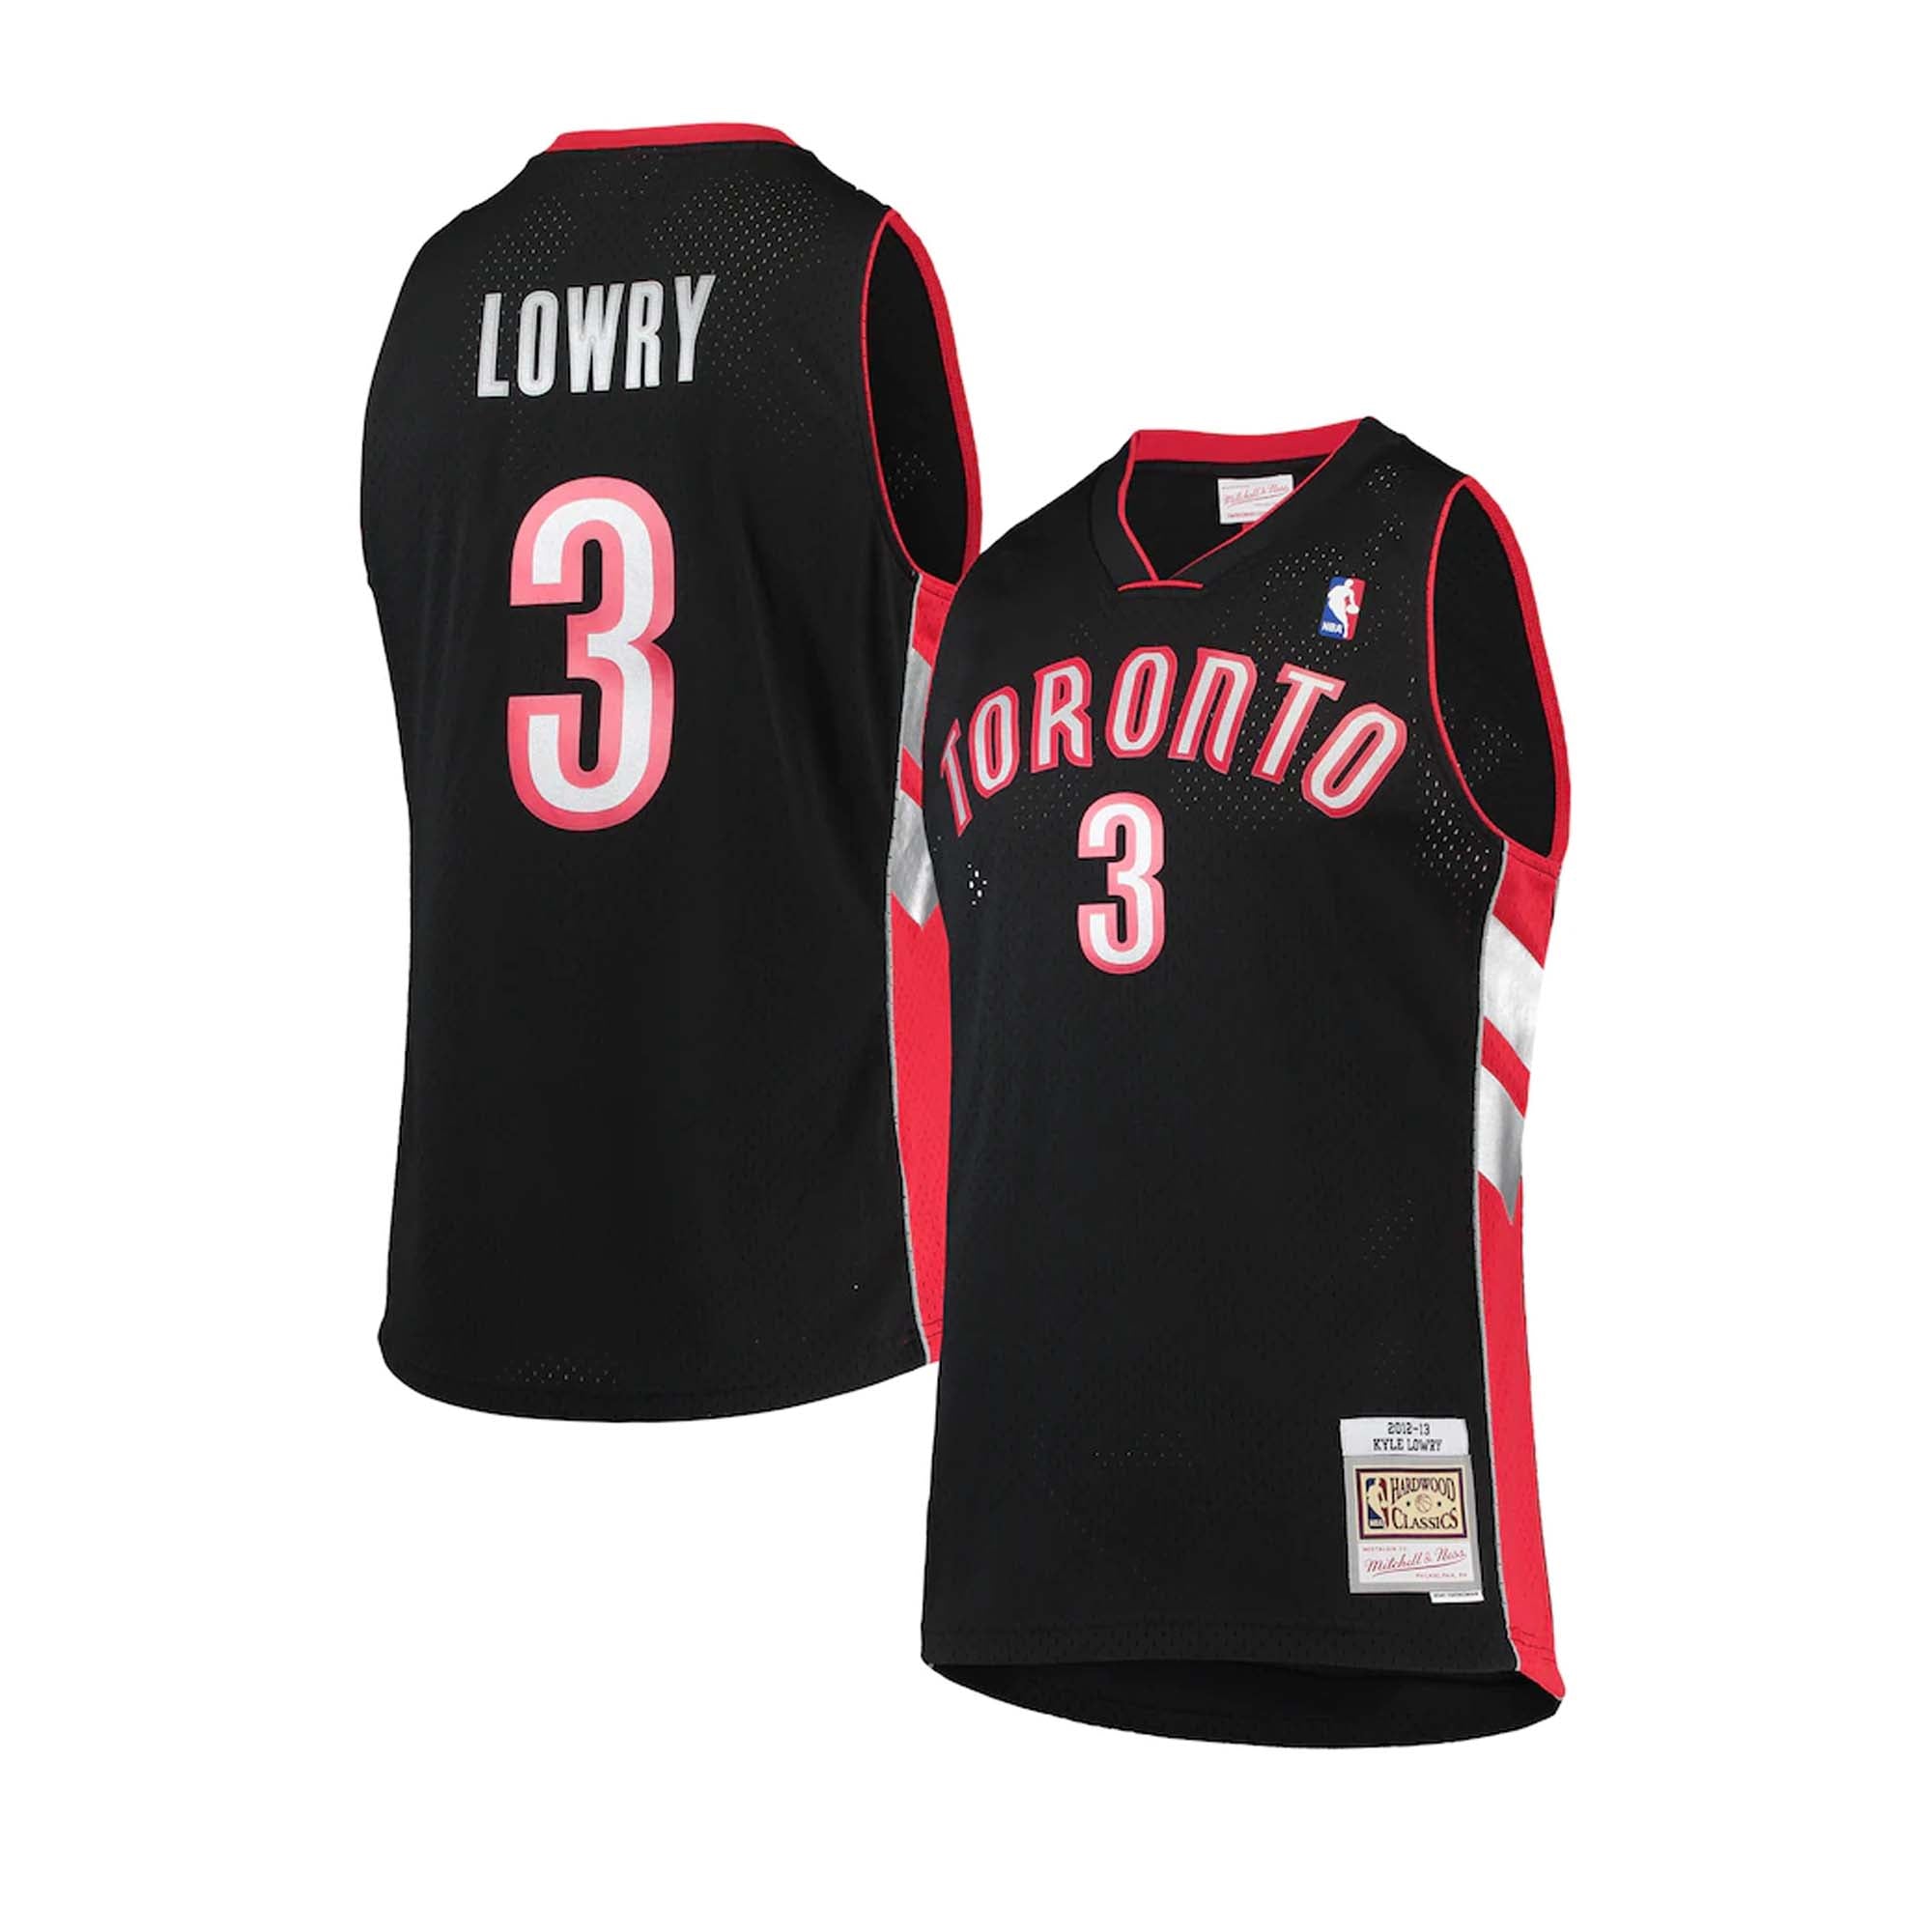 Kyle Lowry NBA Fan Jerseys for sale